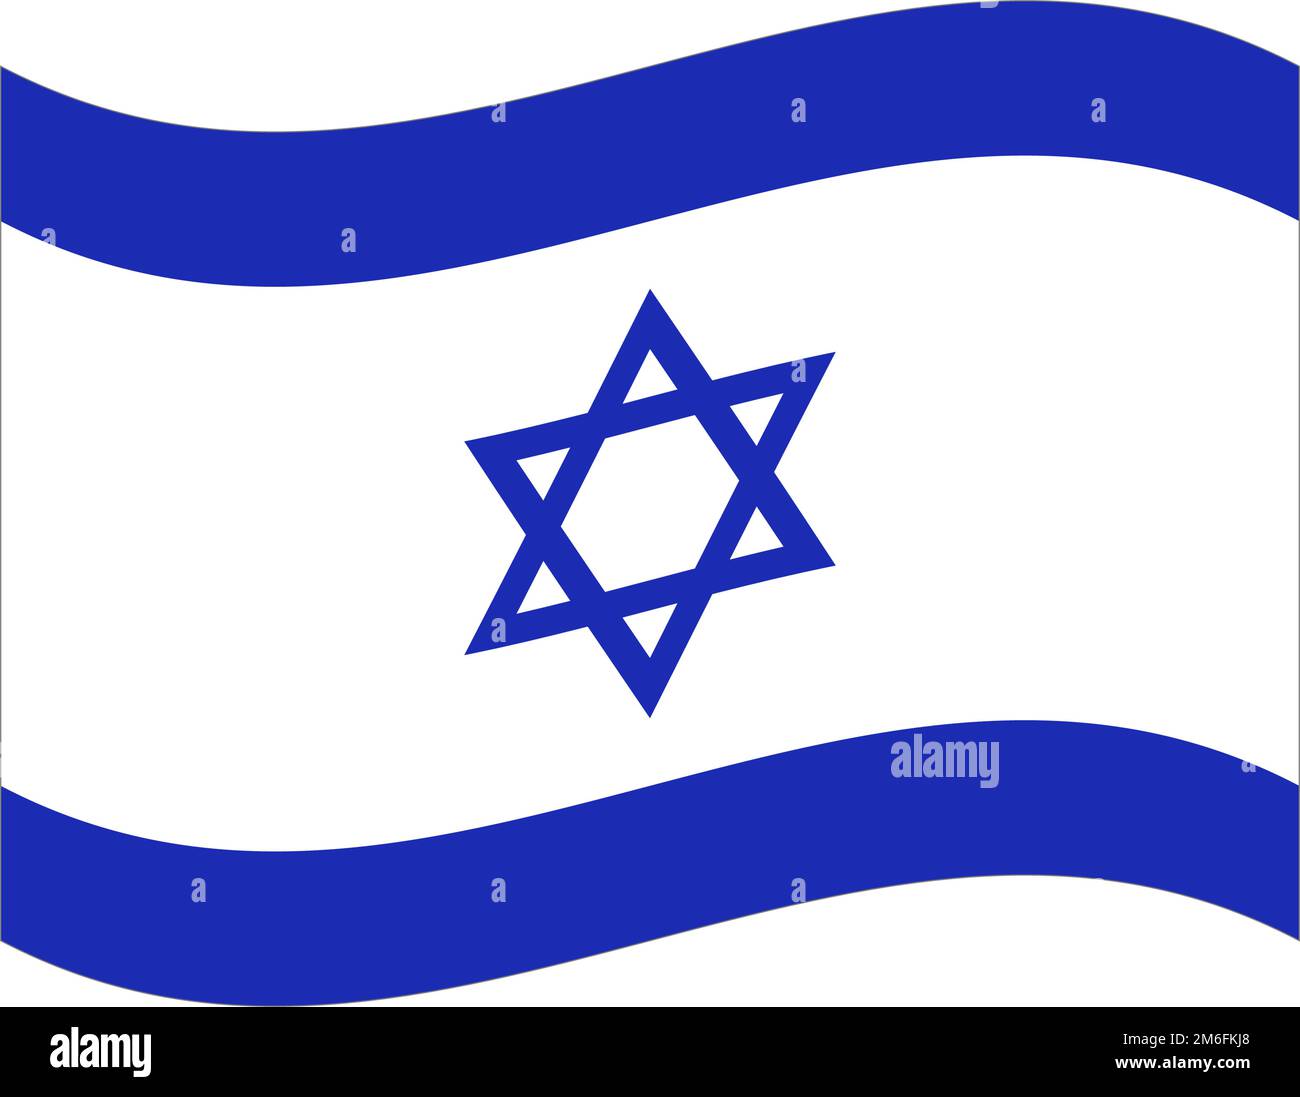 Flatternde israelische Flagge. Flagge Israels. Bearbeitbarer Vektor. Stock Vektor